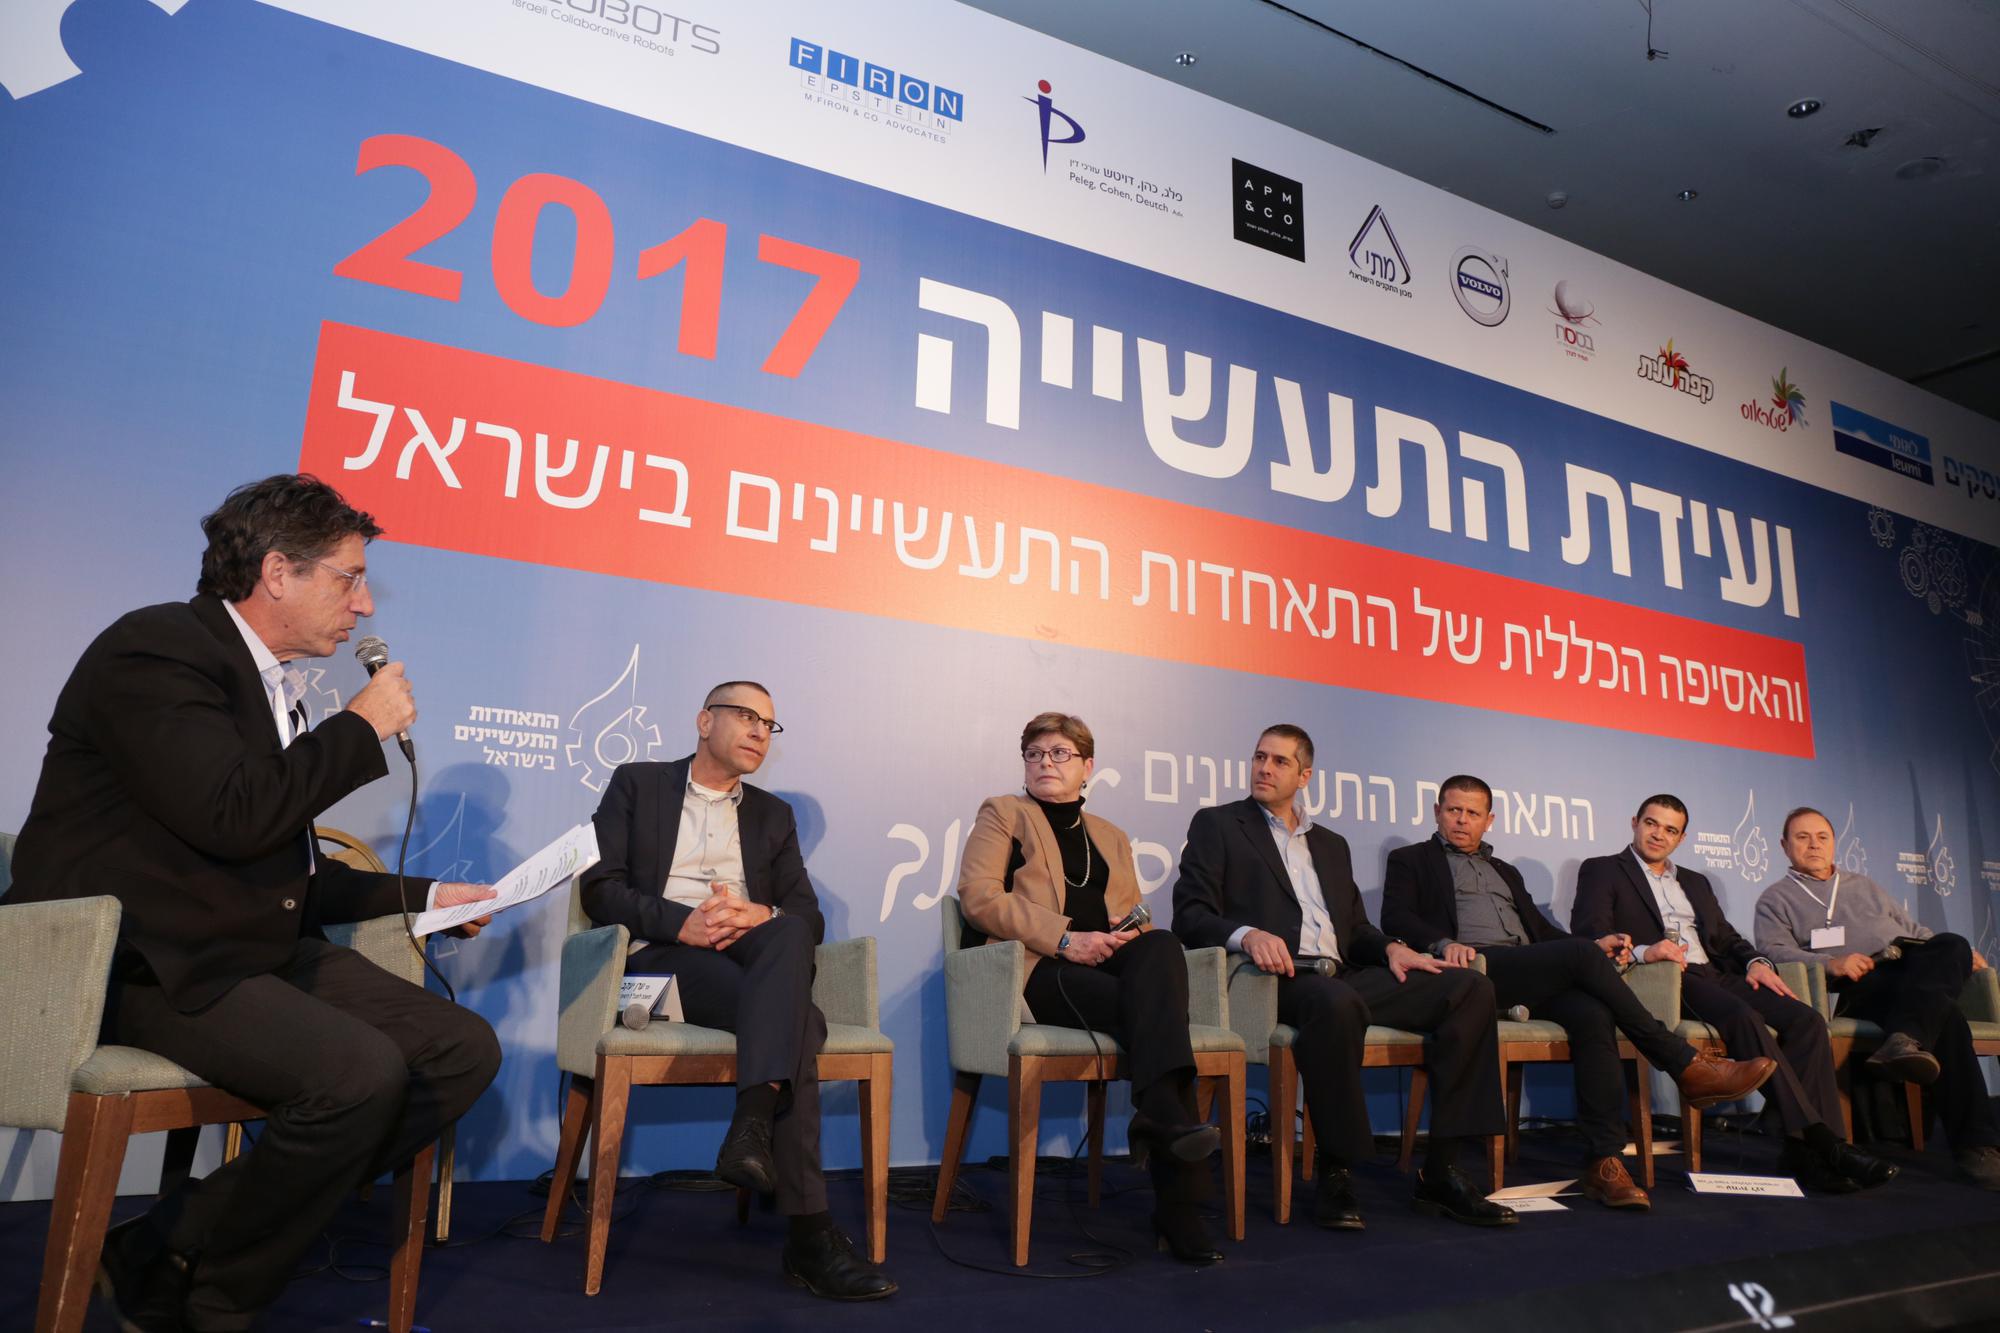 נכ"לית אינטל ישראל, מקסין פסברג, אמרה כי "אני חושבת שכדי לעזור לתעשייה אנחנו צריכים משהו שהוא מעבר לוועדה לעידוד התעשייה